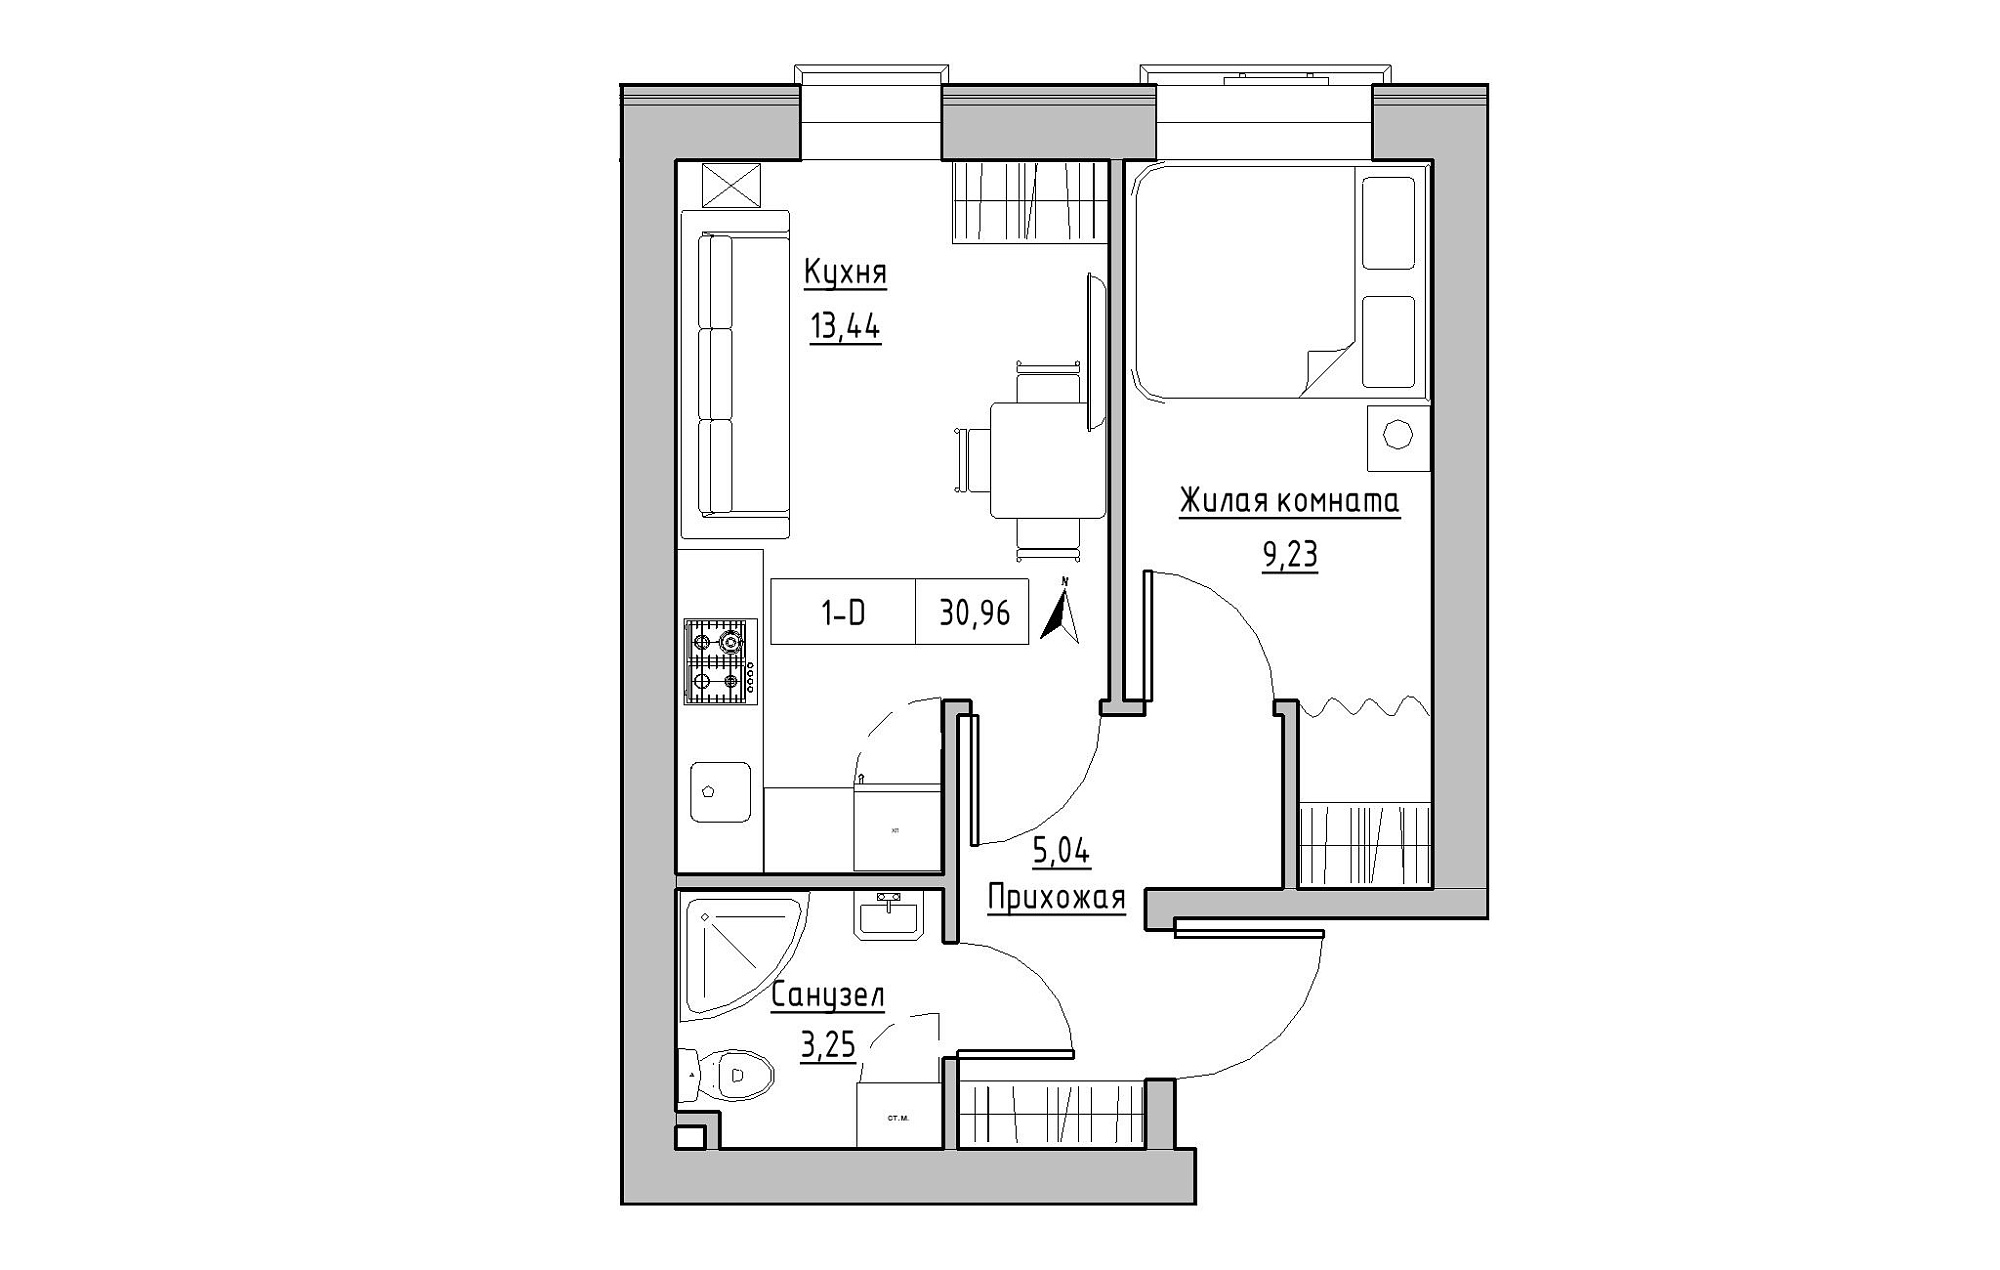 Планування 1-к квартира площею 30.96м2, KS-019-01/0013.